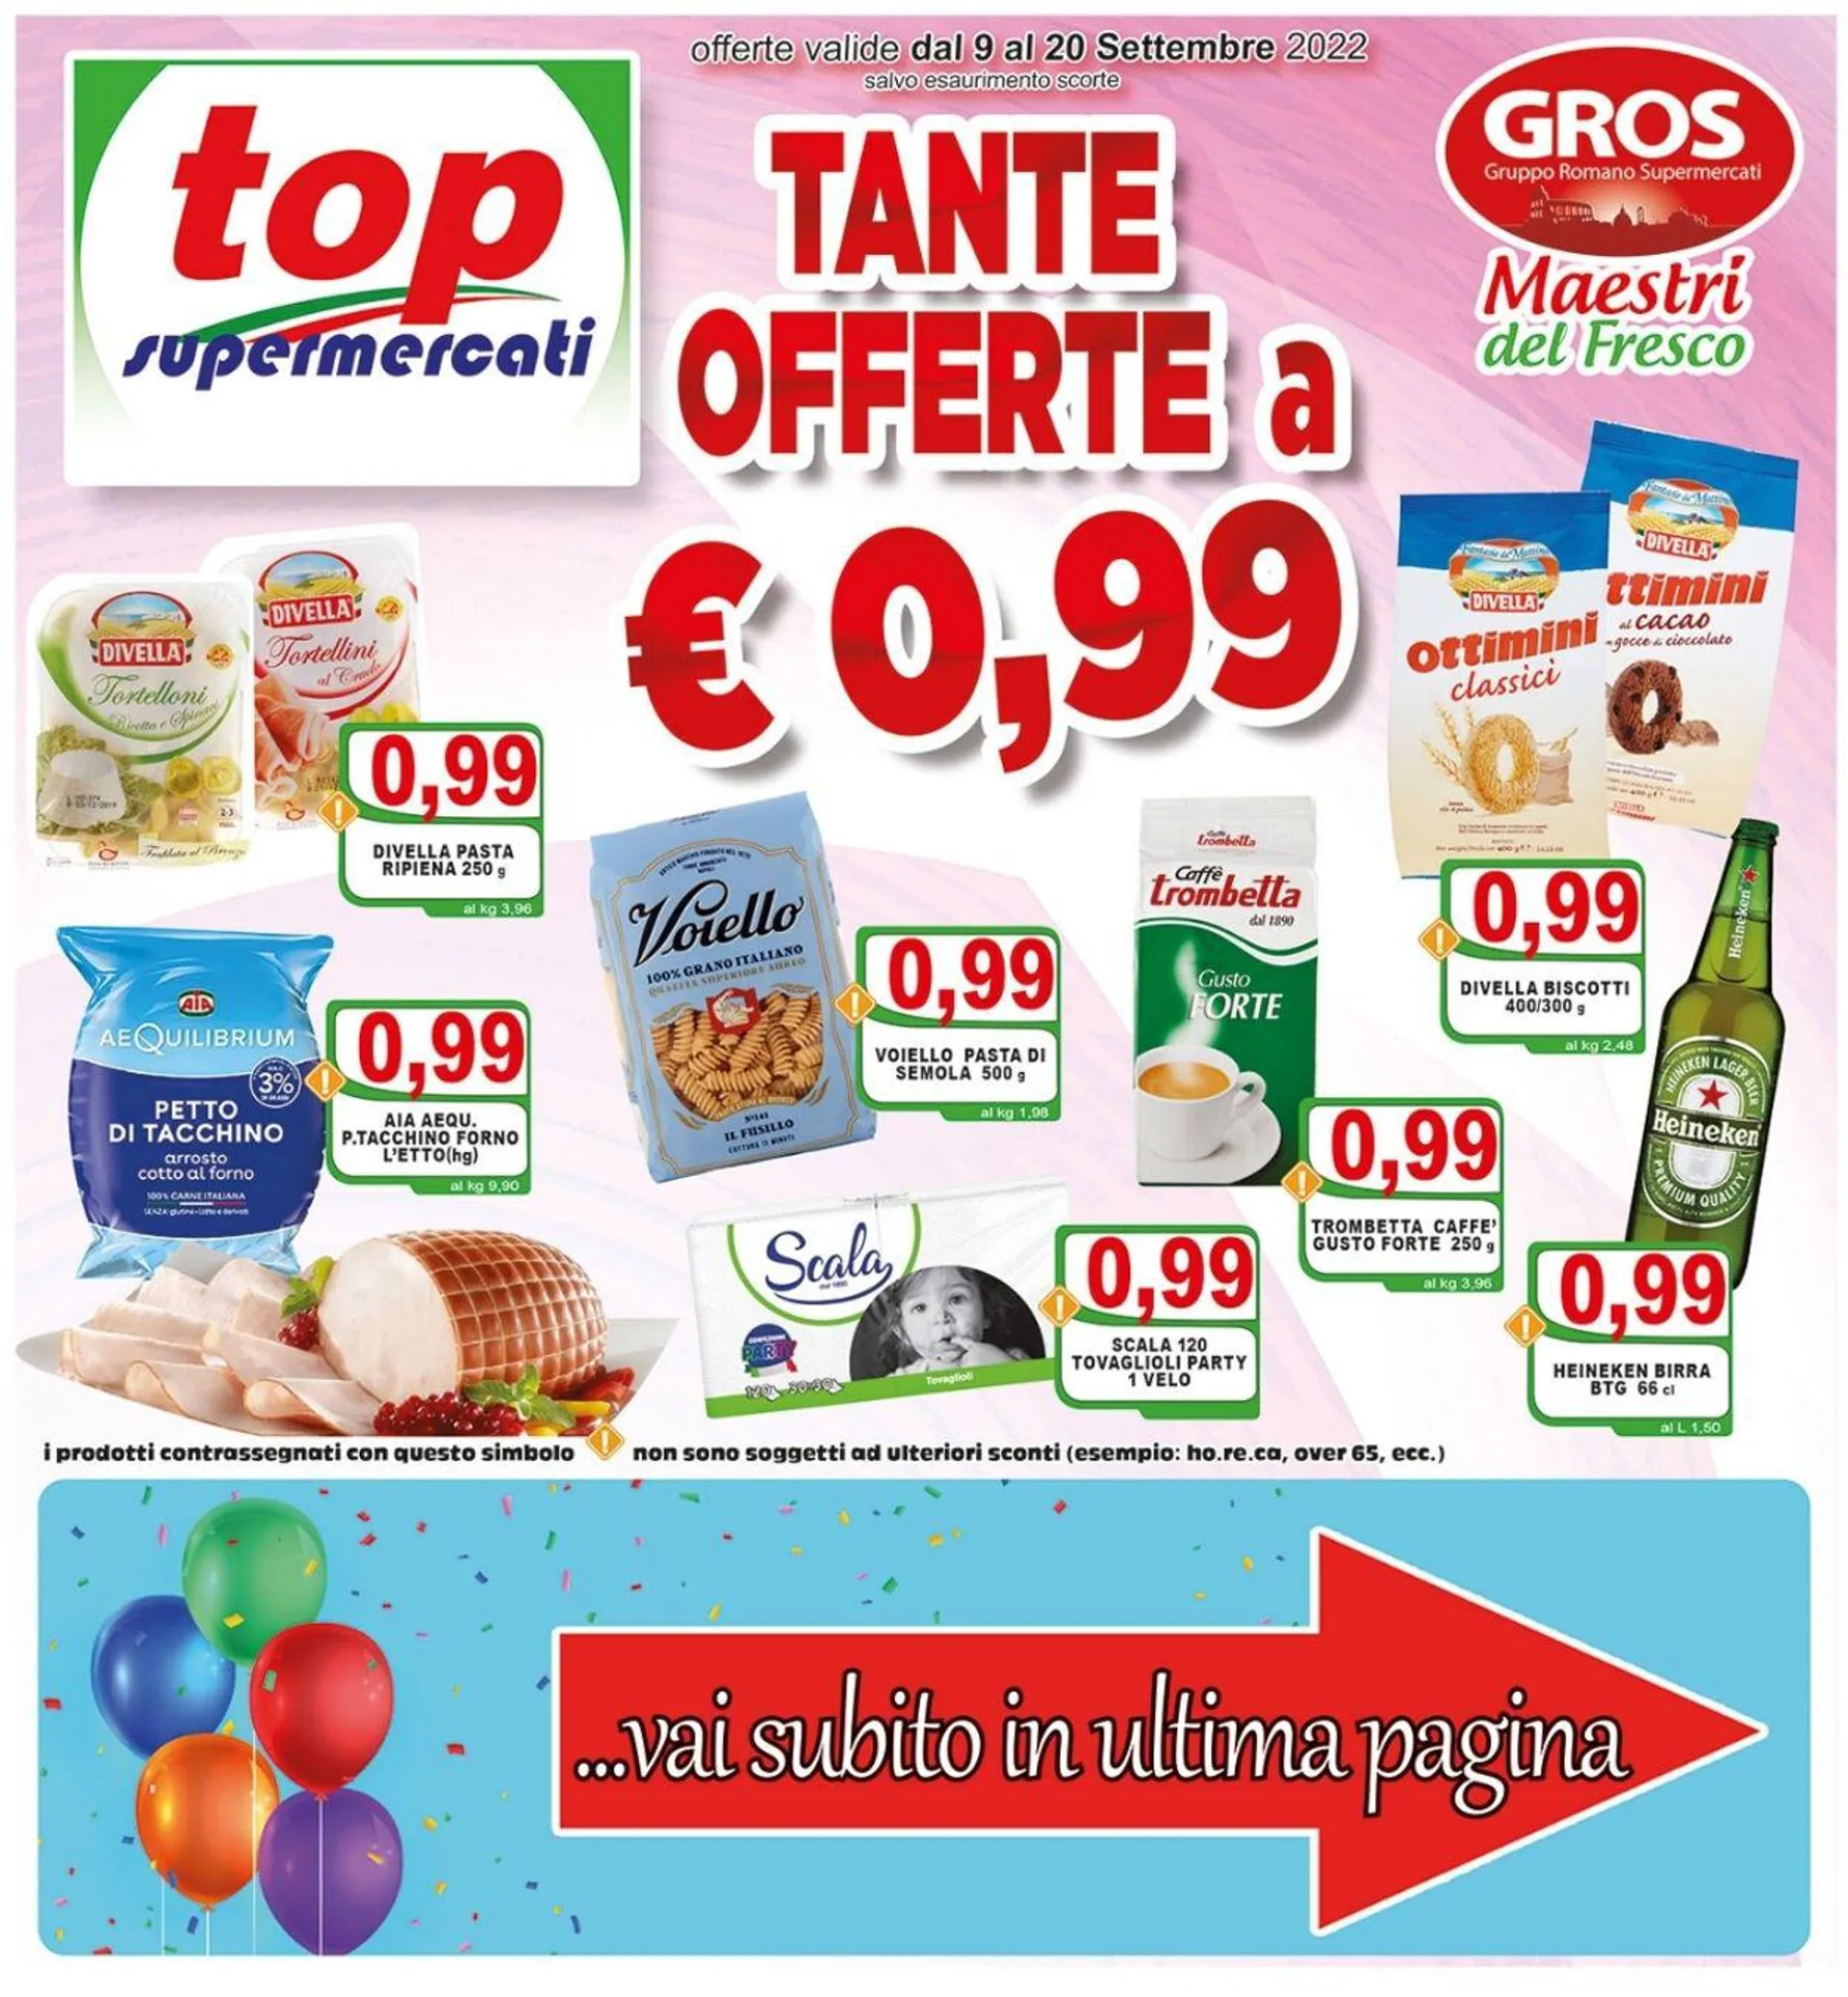 Top Supermercati Volantino attuale - 1